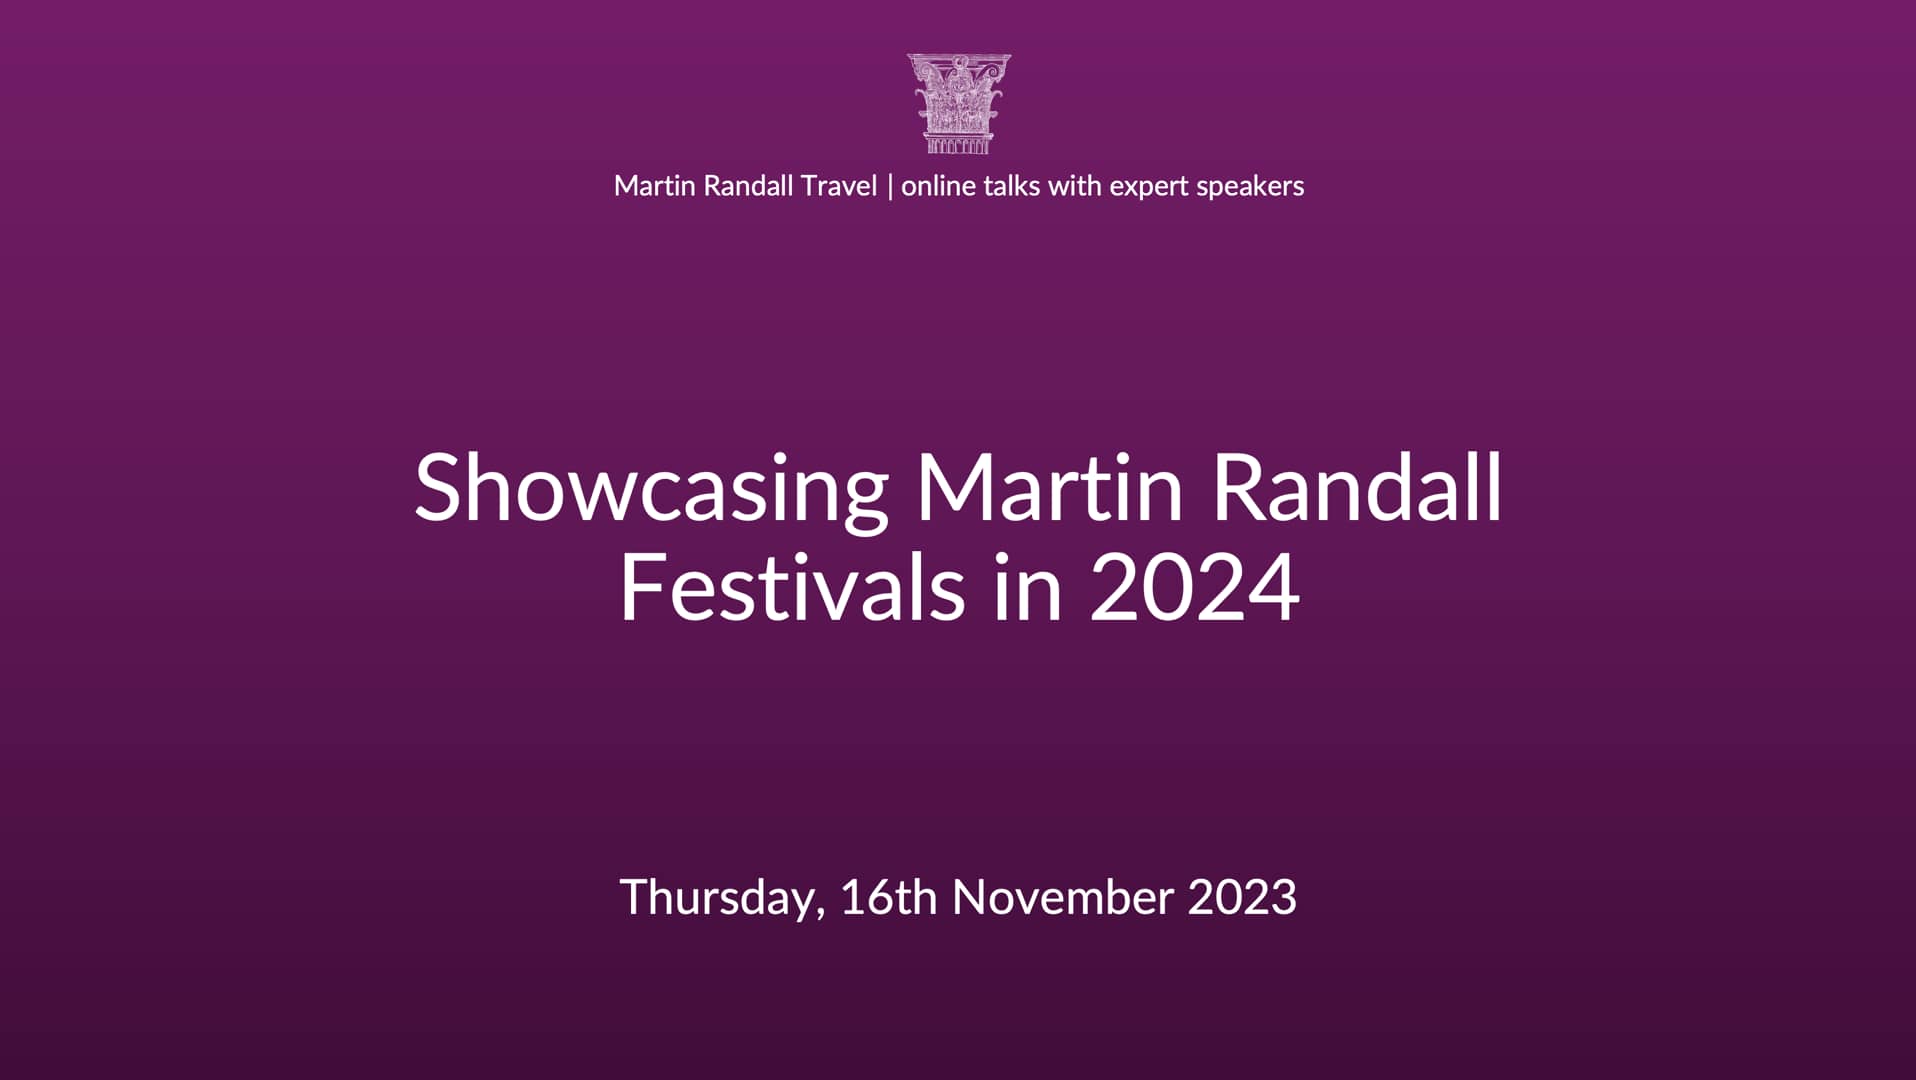 Showcasing Martin Randall Festivals in 2024 on Vimeo